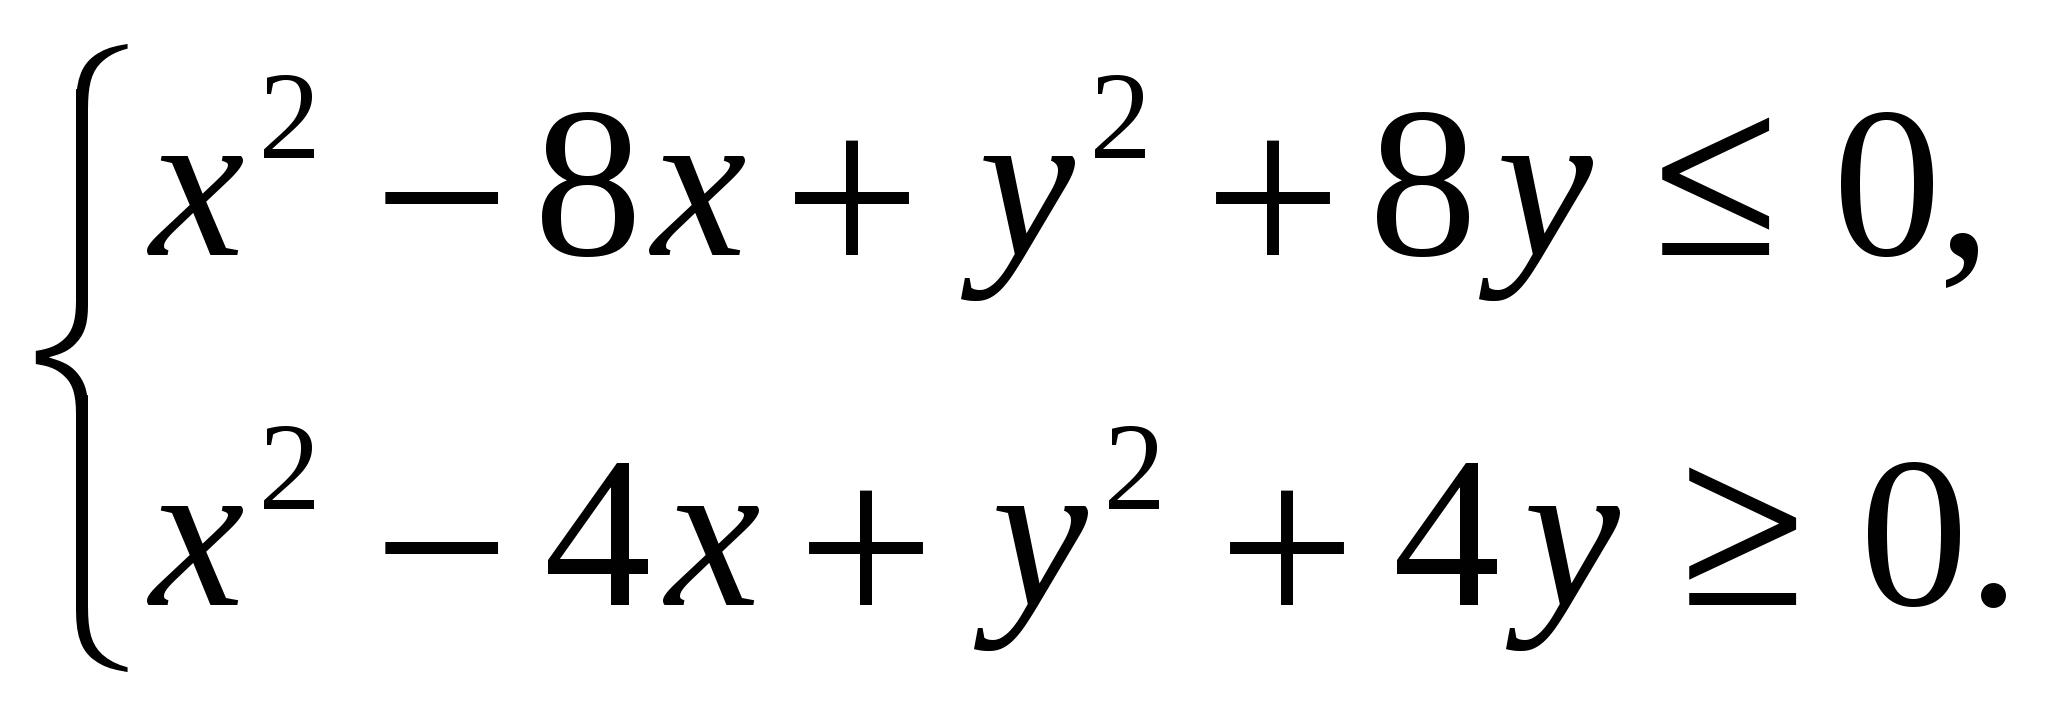 Фрагмент урока в 9 классе по алгебре «Решение систем неравенств с двумя переменными» с использованием программы Advanced Grapher и метода Шесть шляп